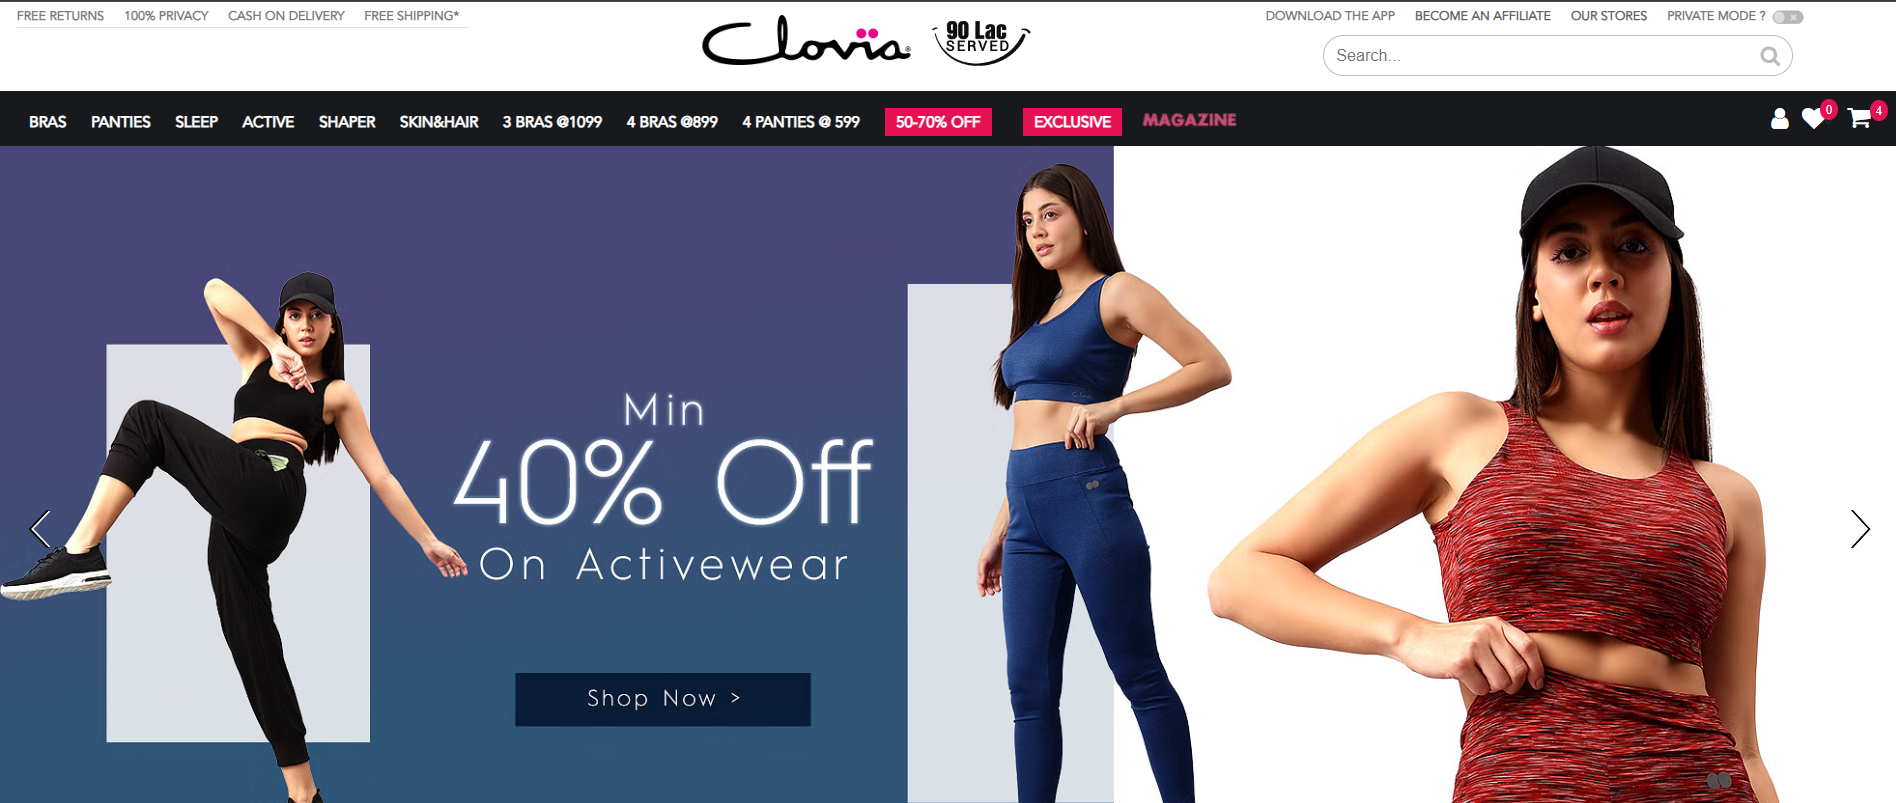 clovia-offers